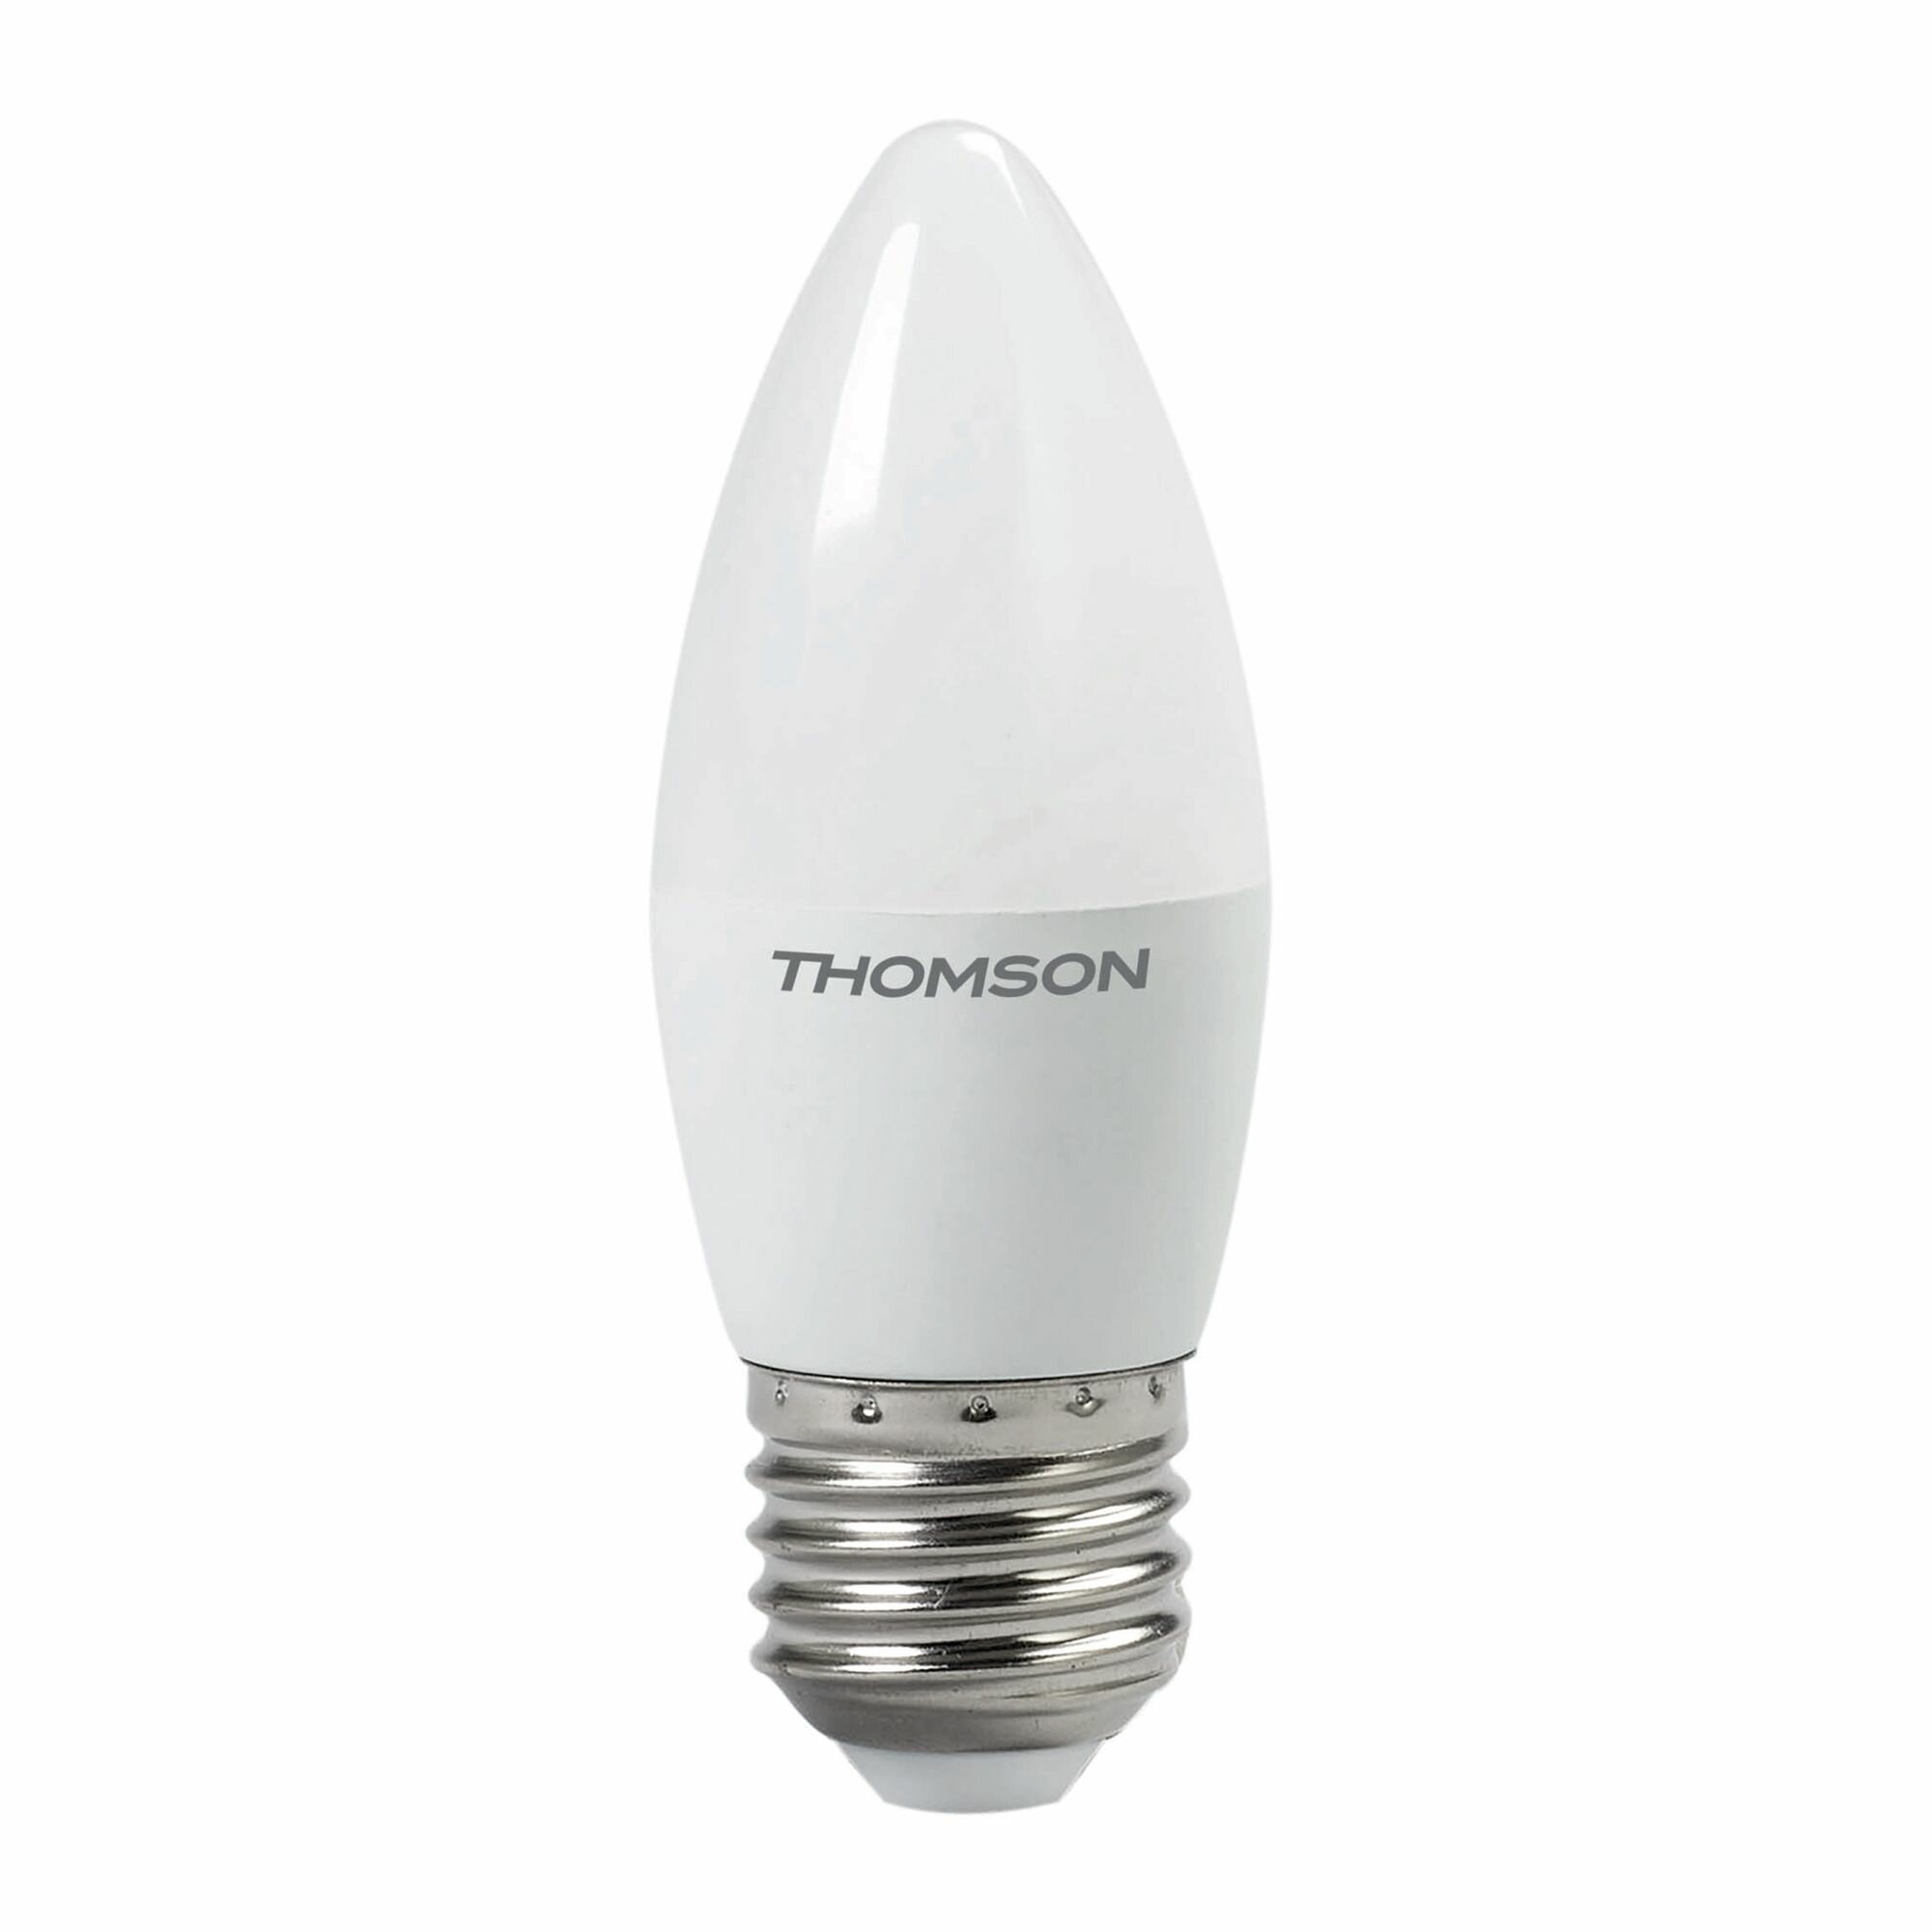 Лампочка Thomson TH-B2021 8 Вт, E27, 3000K, свеча, теплый белый свет